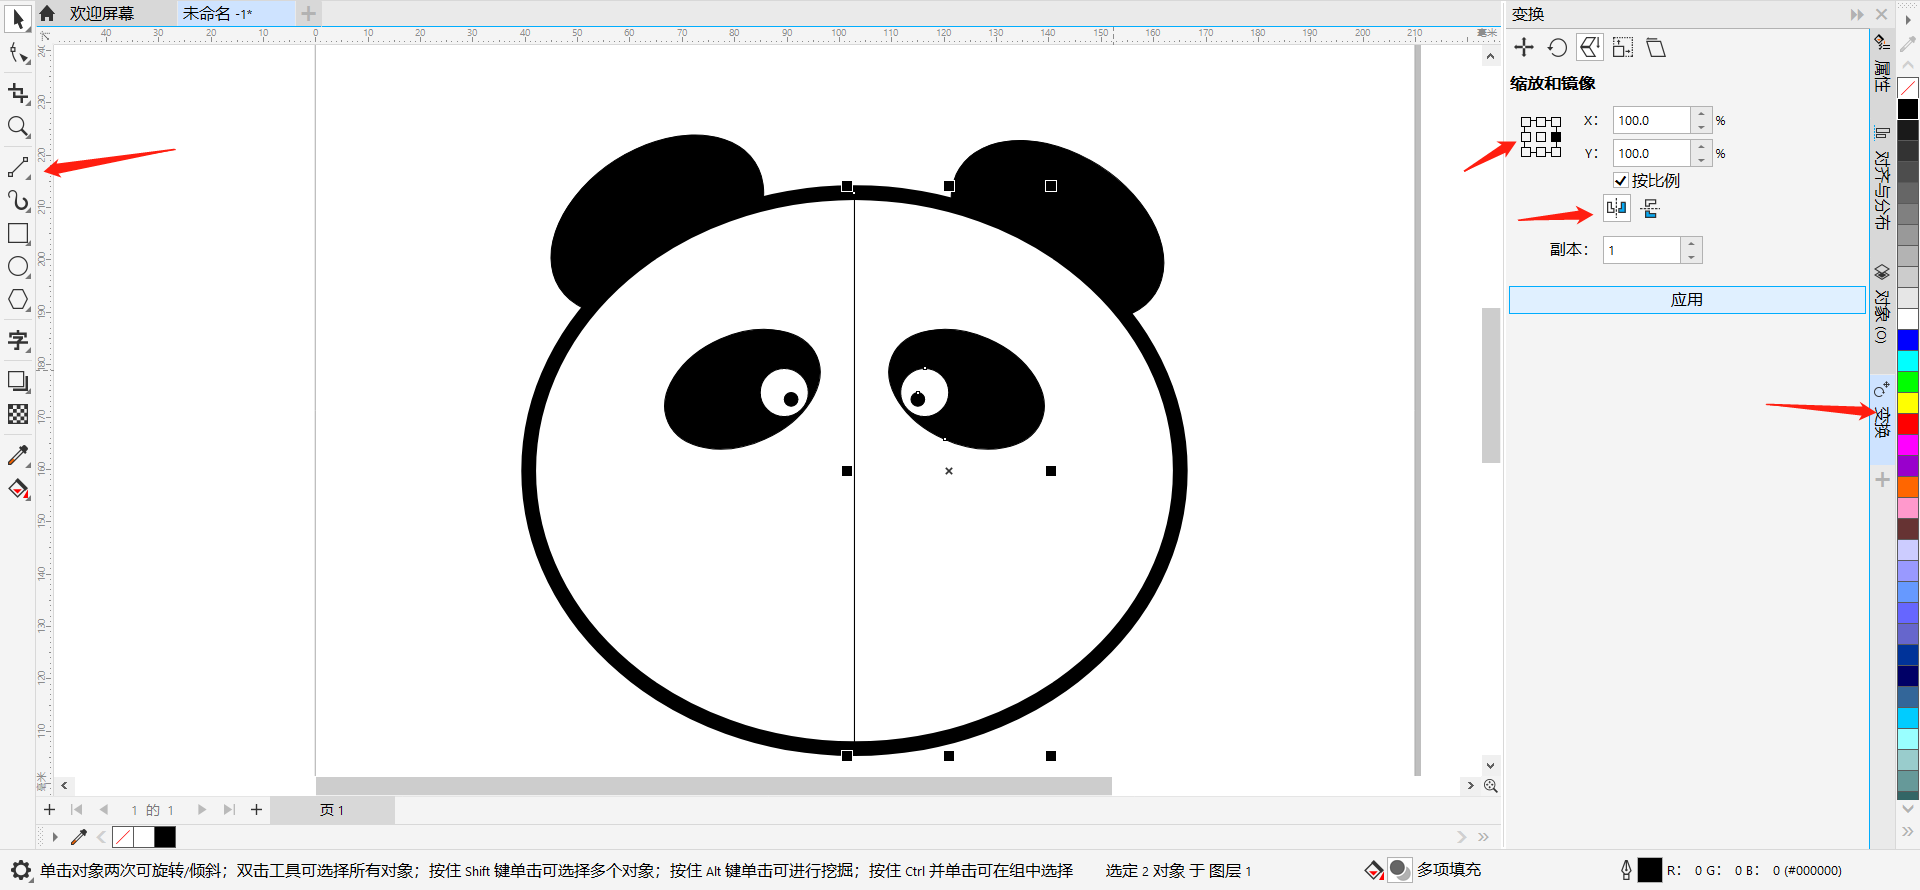 图5：熊猫的眼睛